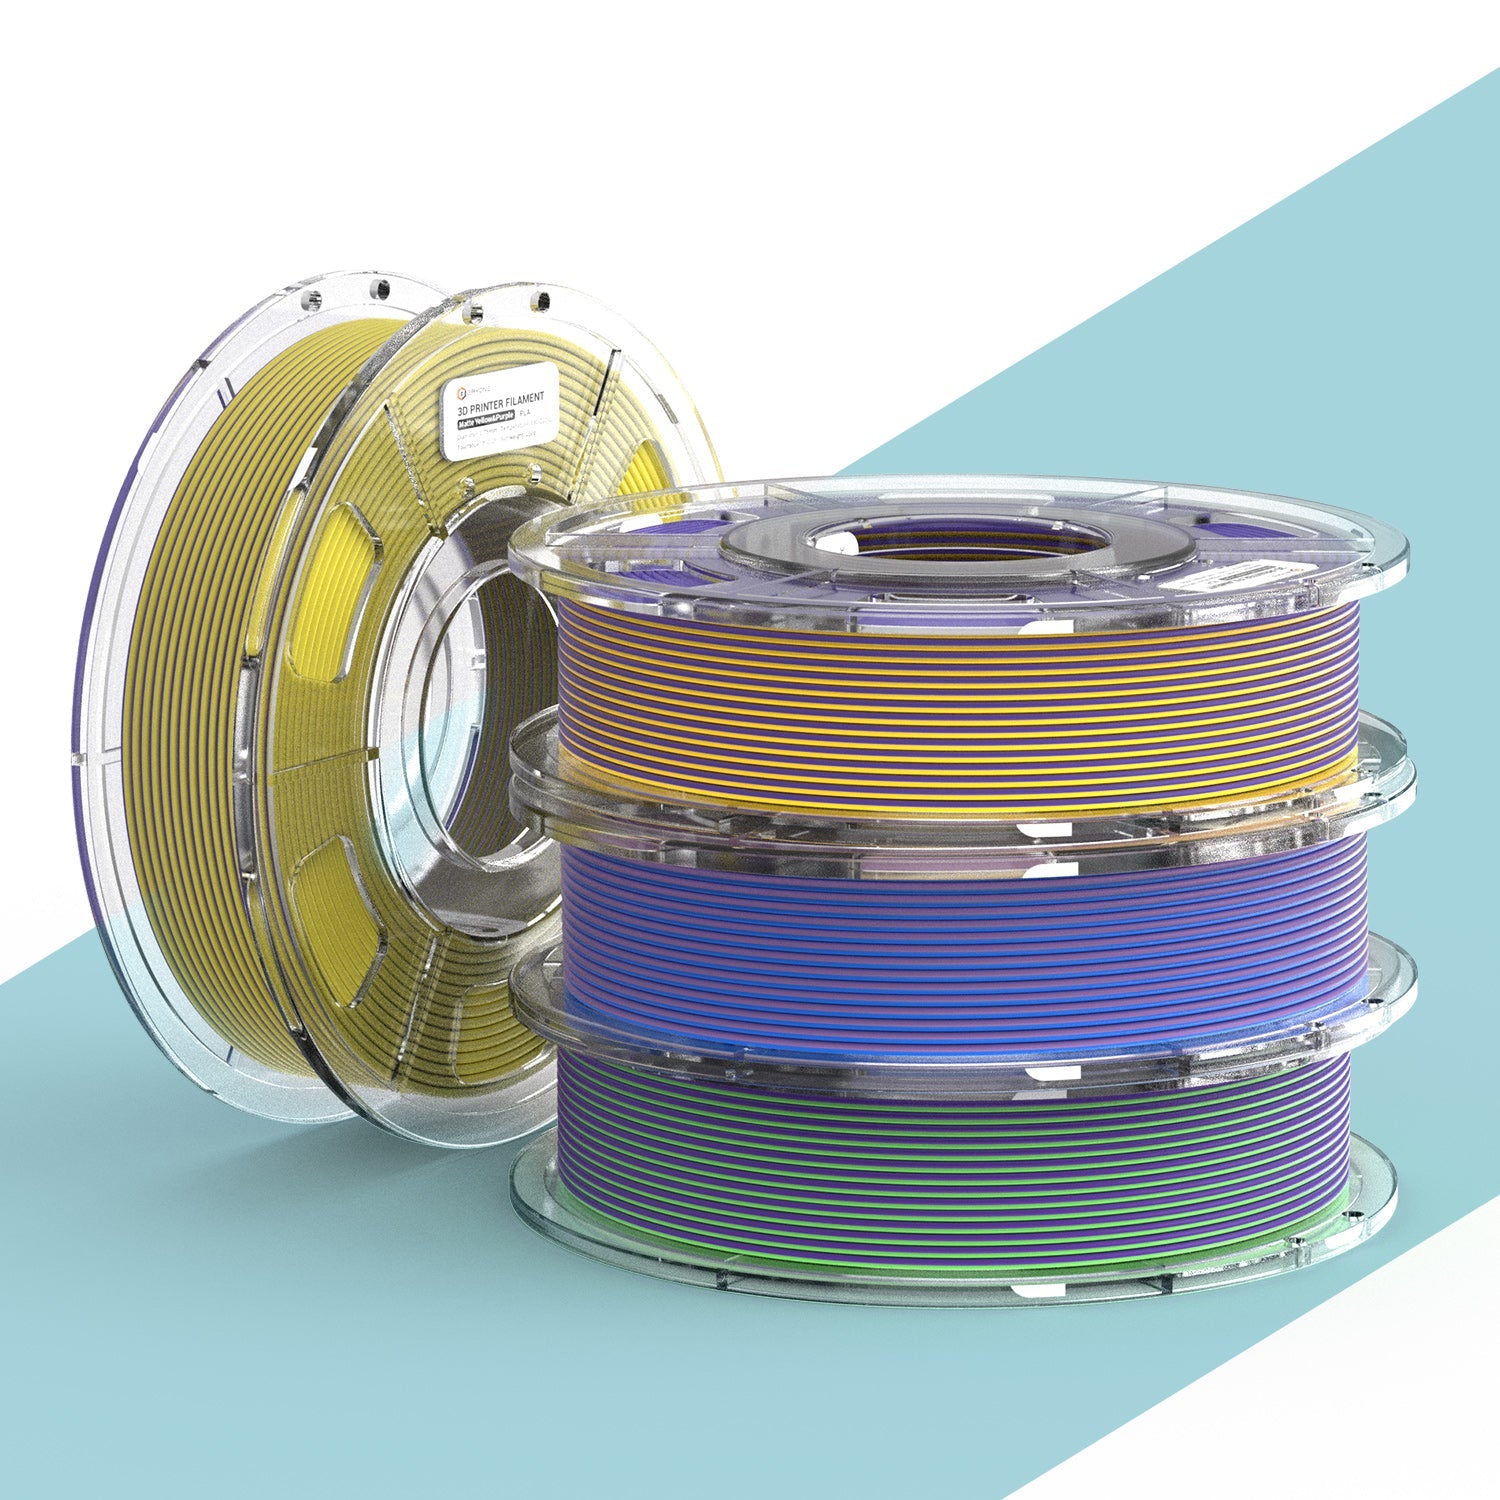 ERYONE 4ROTOLI/250g (totale 1KG/2.2LBS) Filamento PLA opaco a doppio colore da 1,75 mm, precisione +/- 0,03 mm (giallo/viola; blu&giallo; blu/viola; verde/viola)